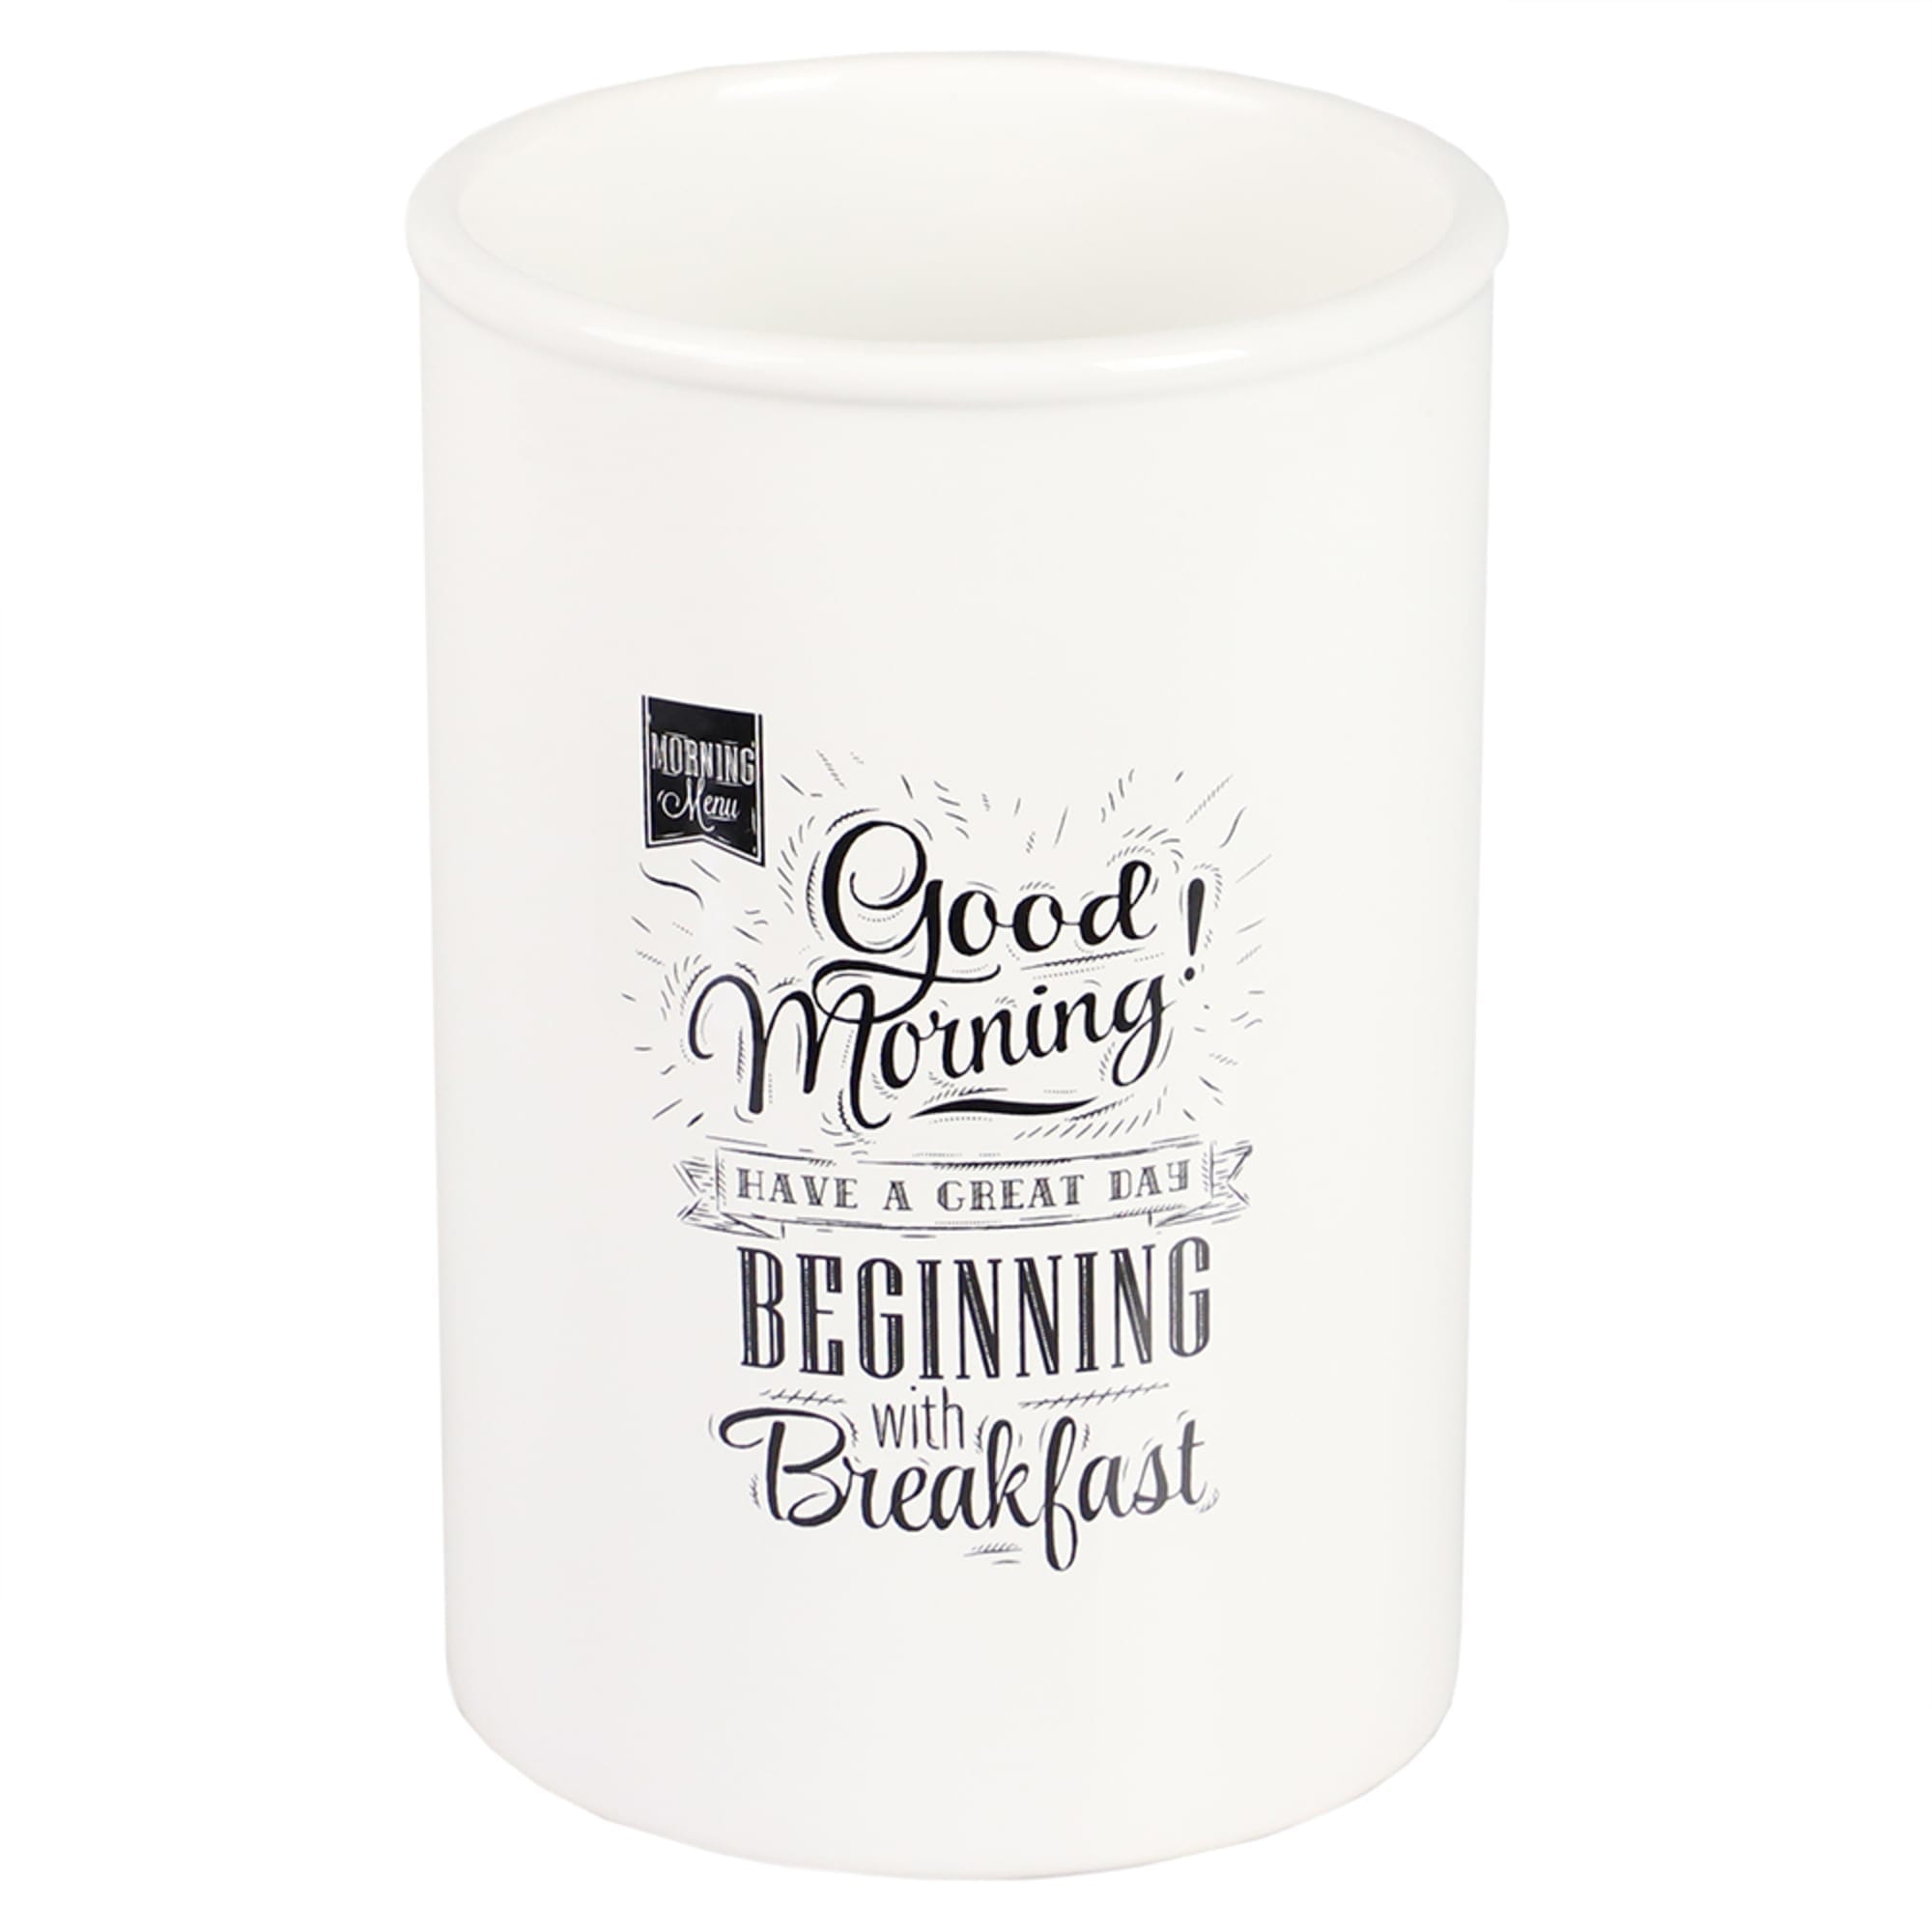 Home Basics Breakfast Ceramic Utensil Crock, White $6.00 EACH, CASE PACK OF 6